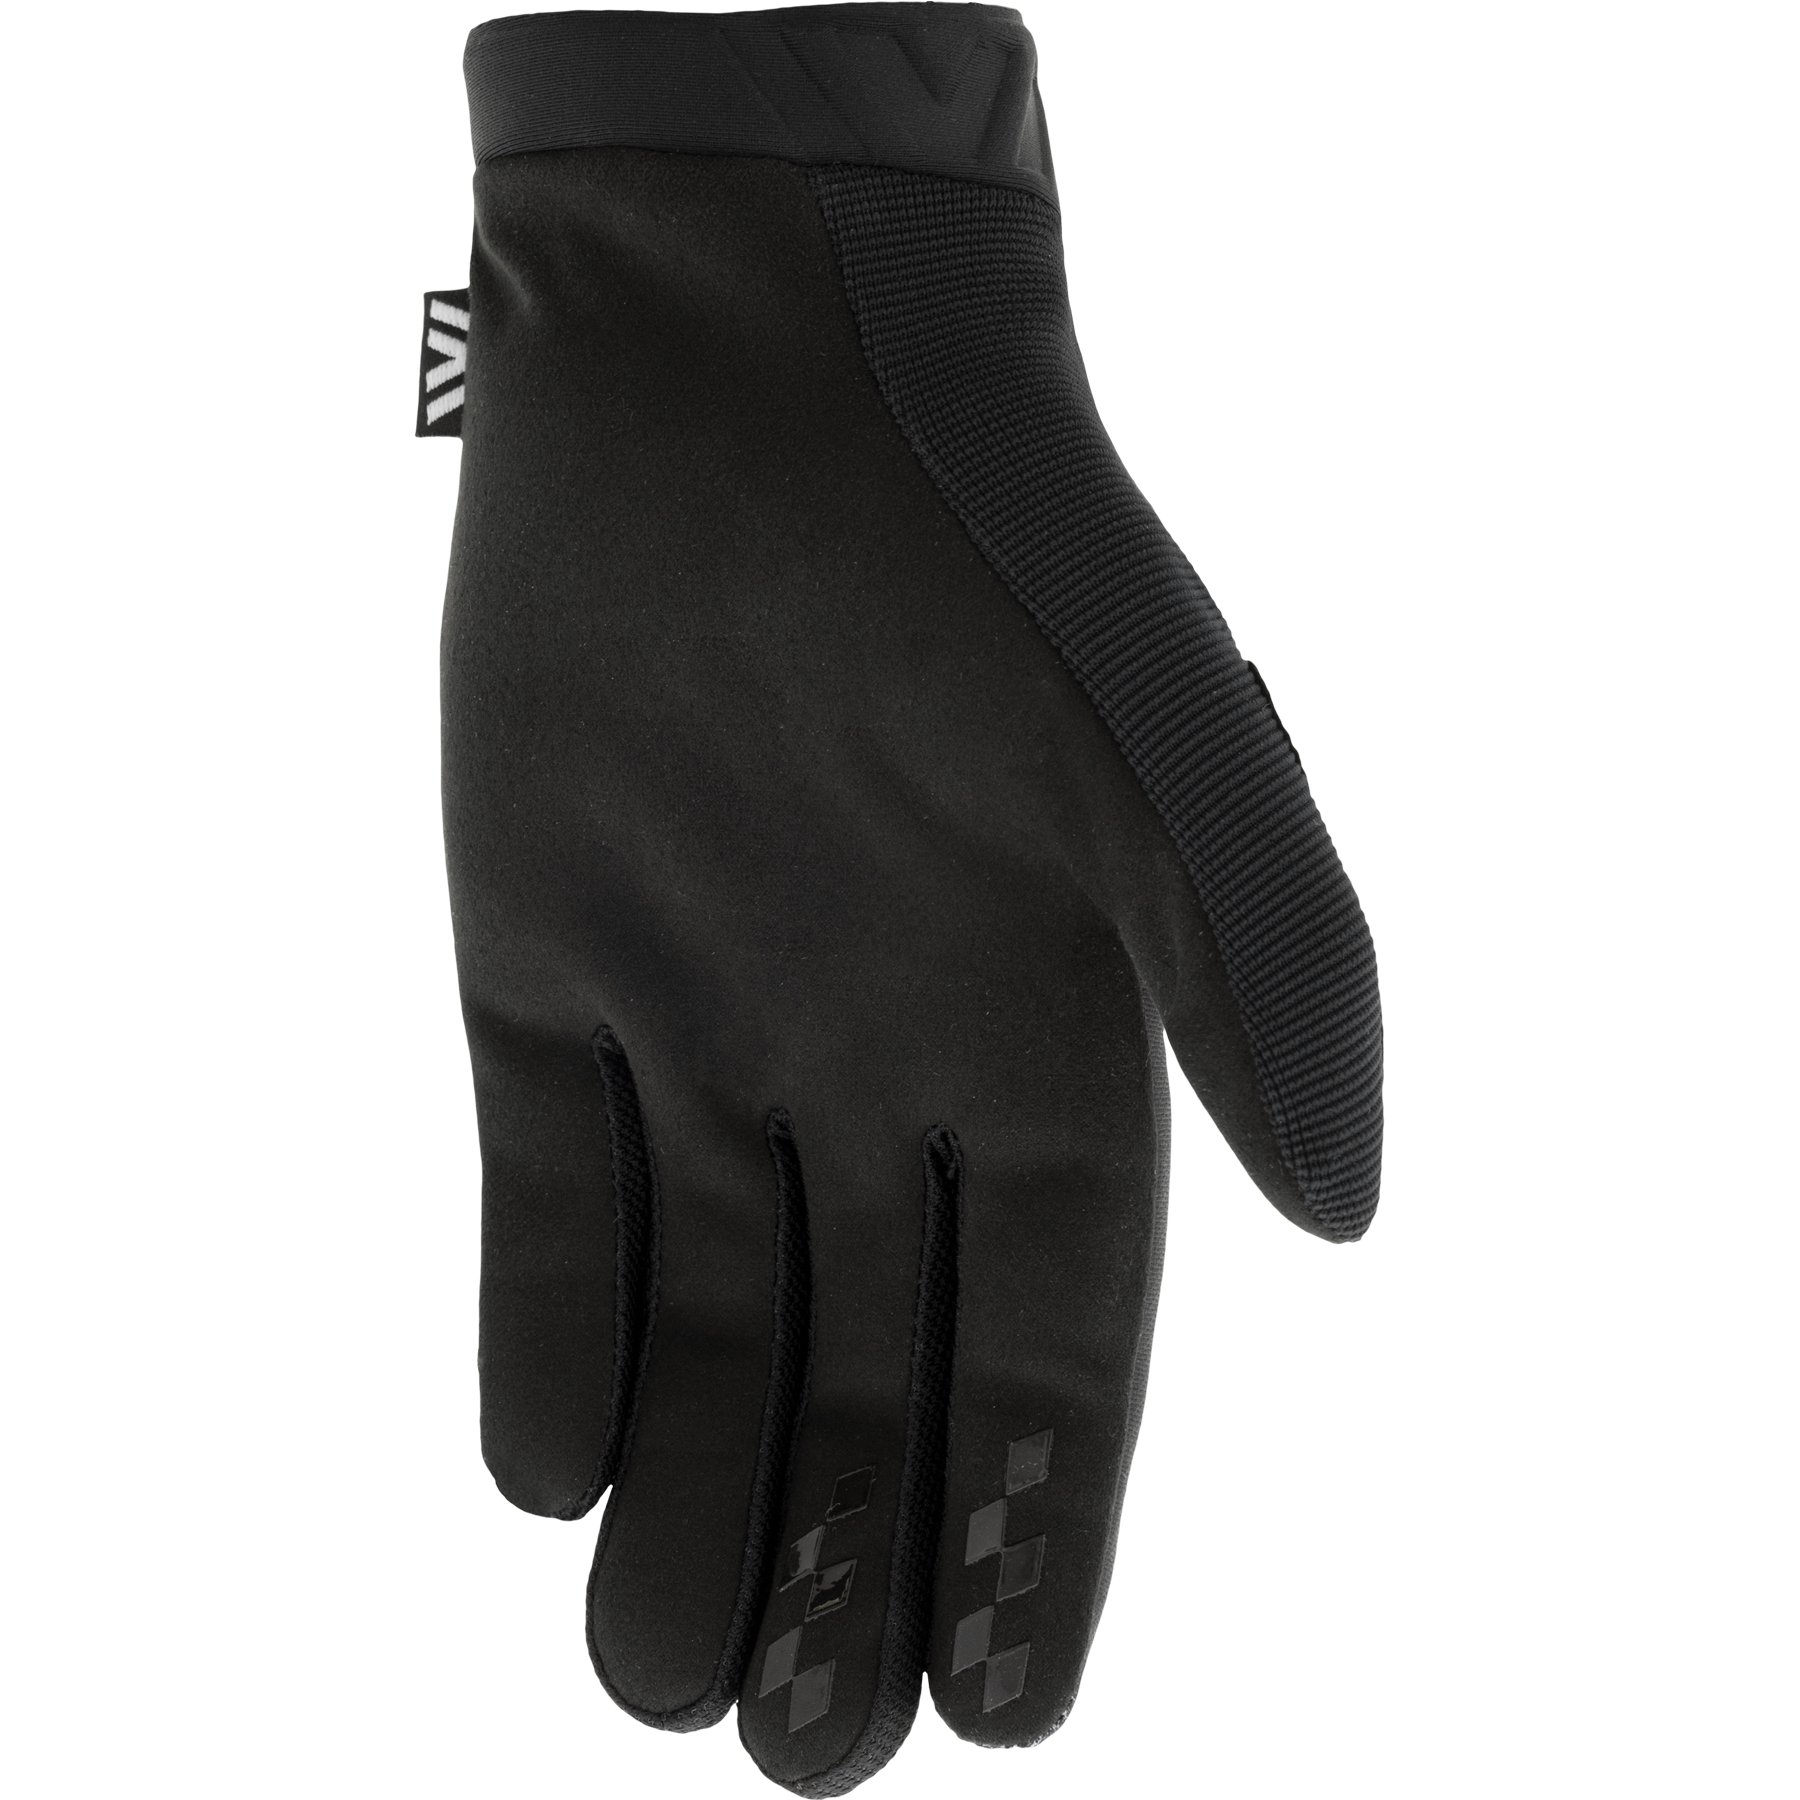 FTA STYLZ Glove Black/White